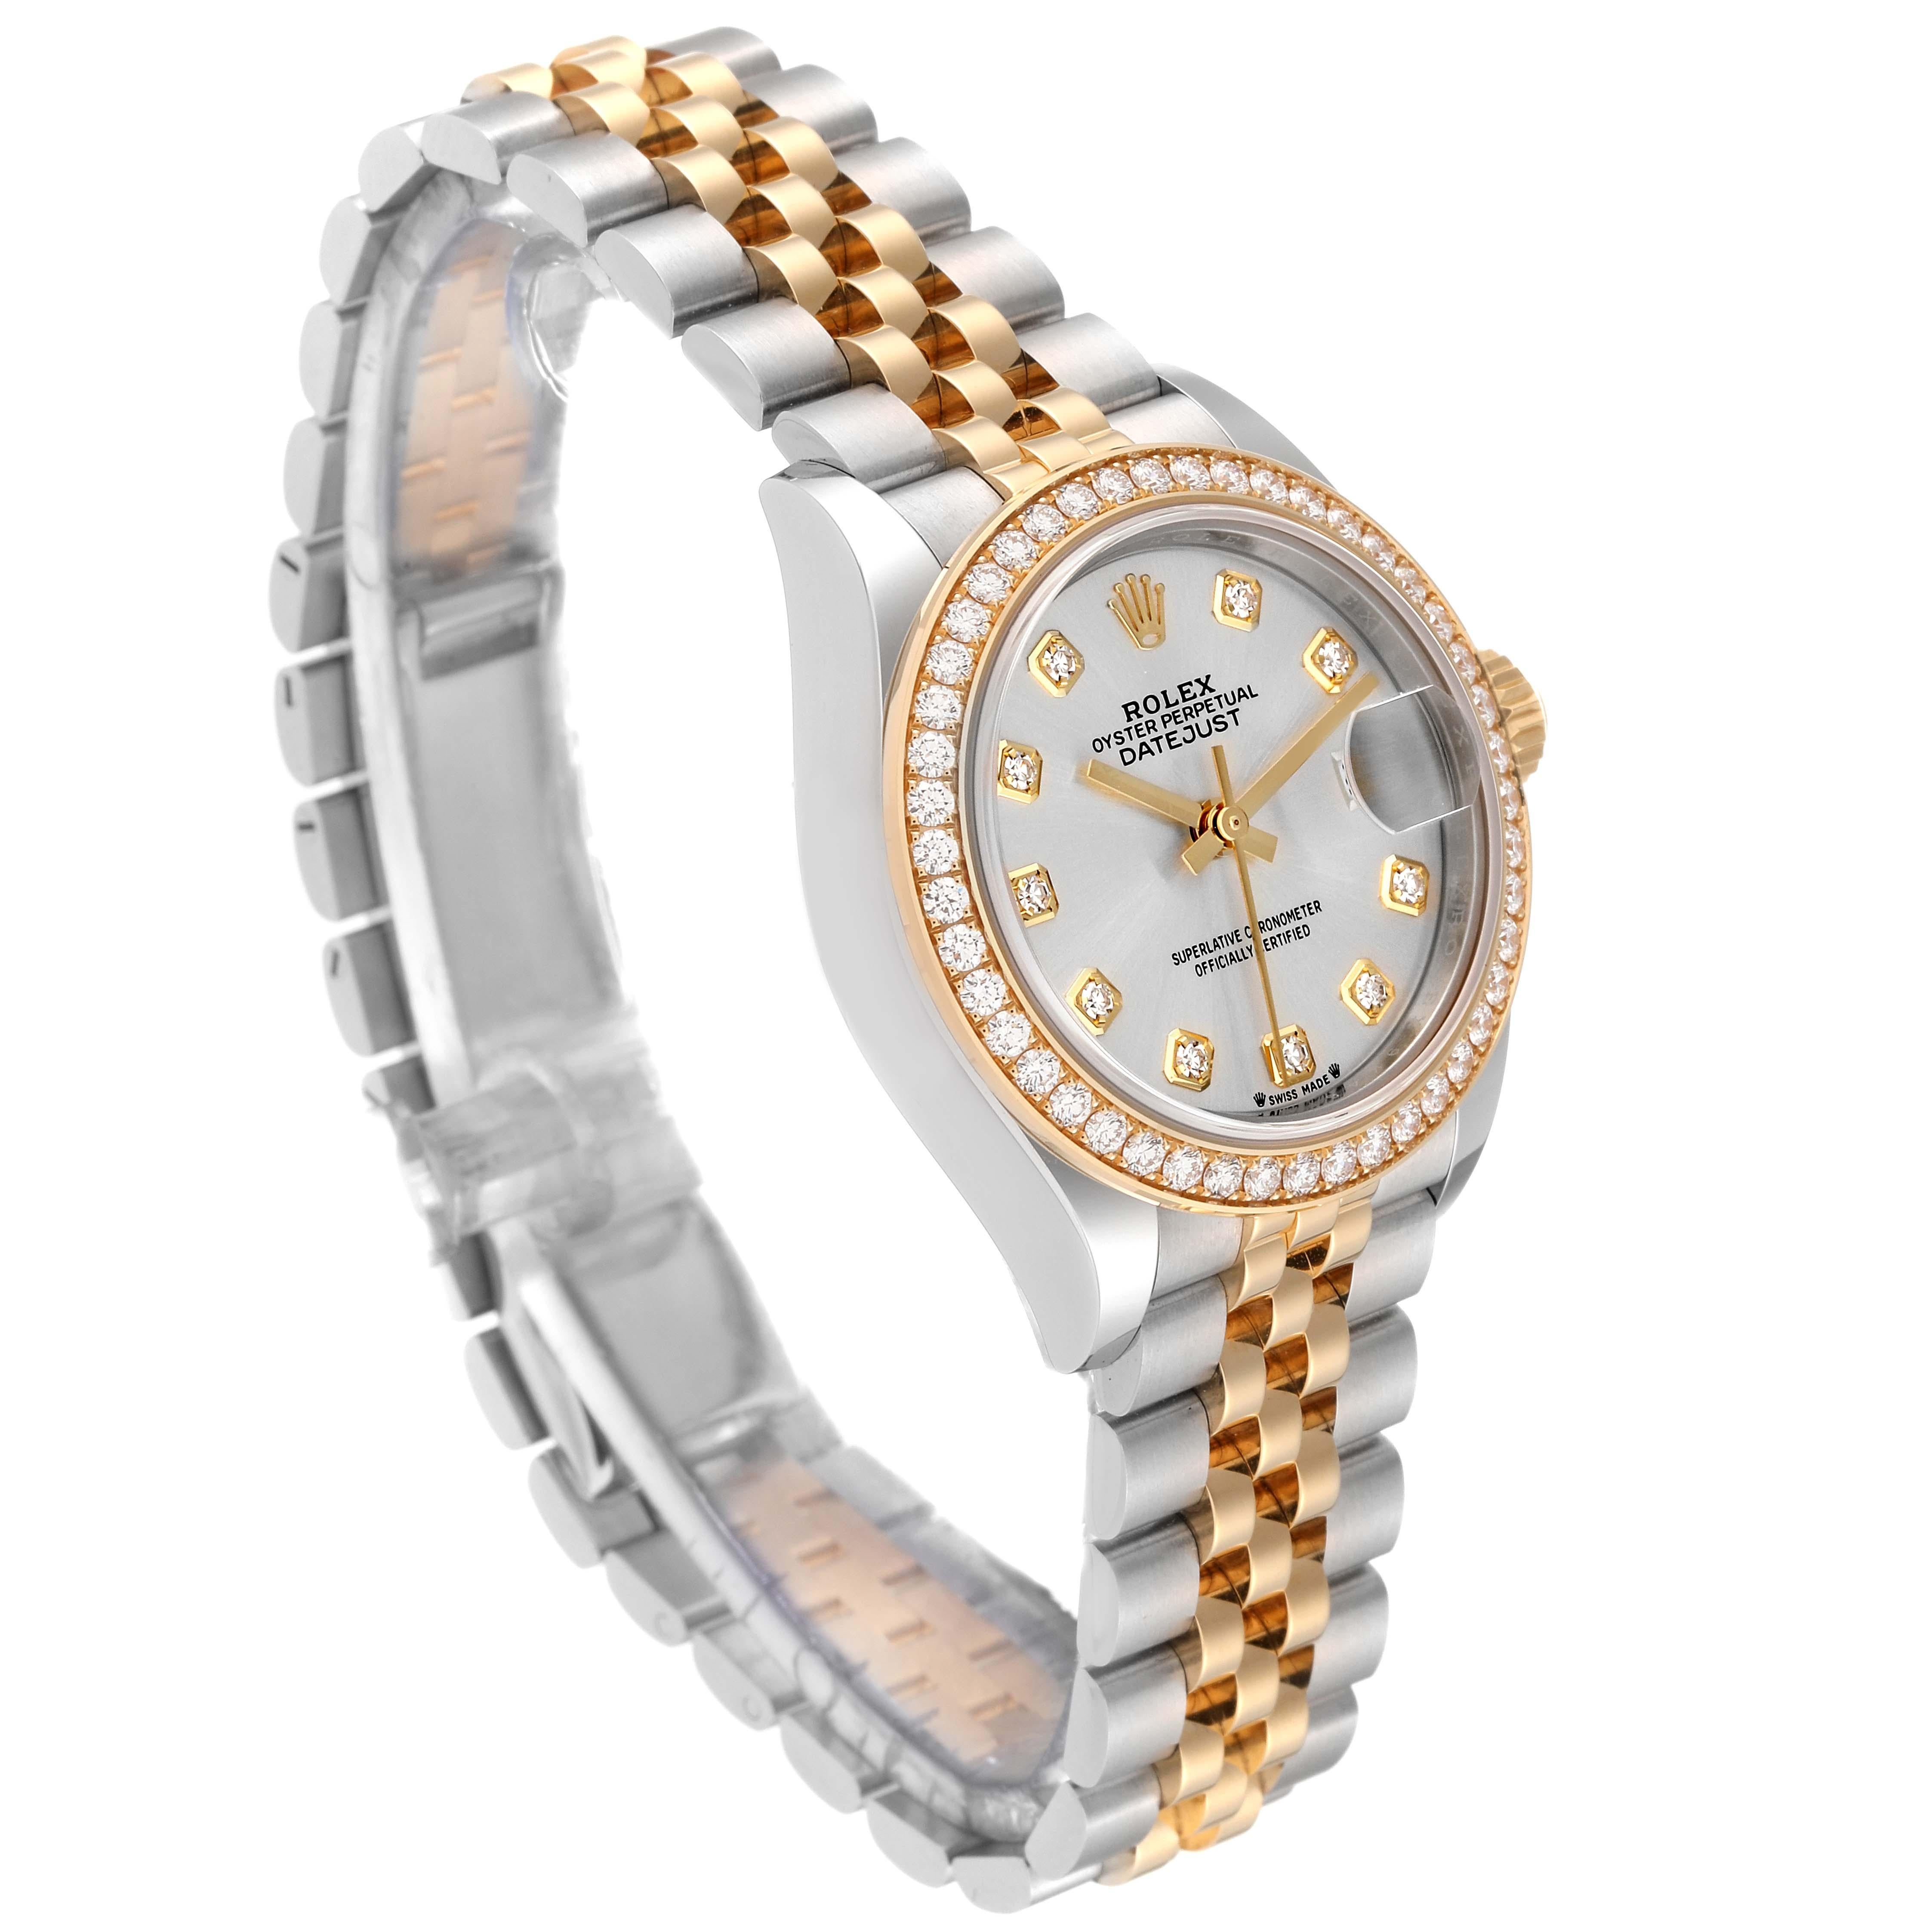 Rolex Datejust Steel Yellow Gold Diamond Ladies Watch 279383 Unworn. Mouvement automatique à remontage automatique, officiellement certifié chronomètre. Boîtier oyster en acier inoxydable de 28.0 mm de diamètre. Logo Rolex sur une couronne en or